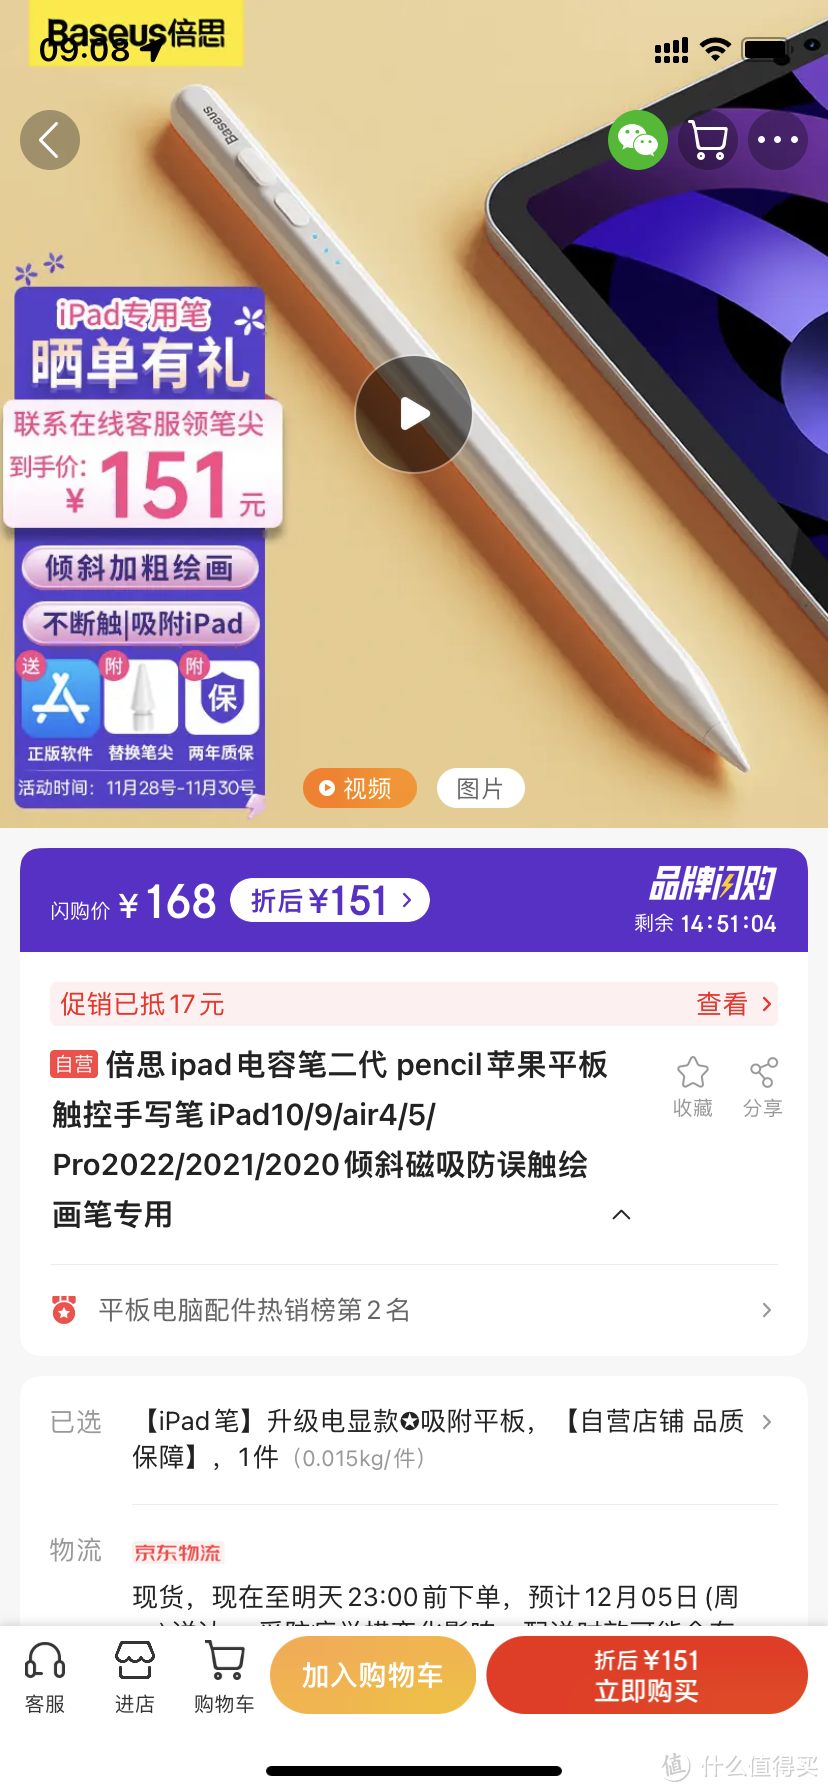 倍思ipad电容笔二代 pencil苹果平板触控手写笔iPad10/9/air4/5/Pro2022/2021/2020倾斜磁吸防误触绘画笔